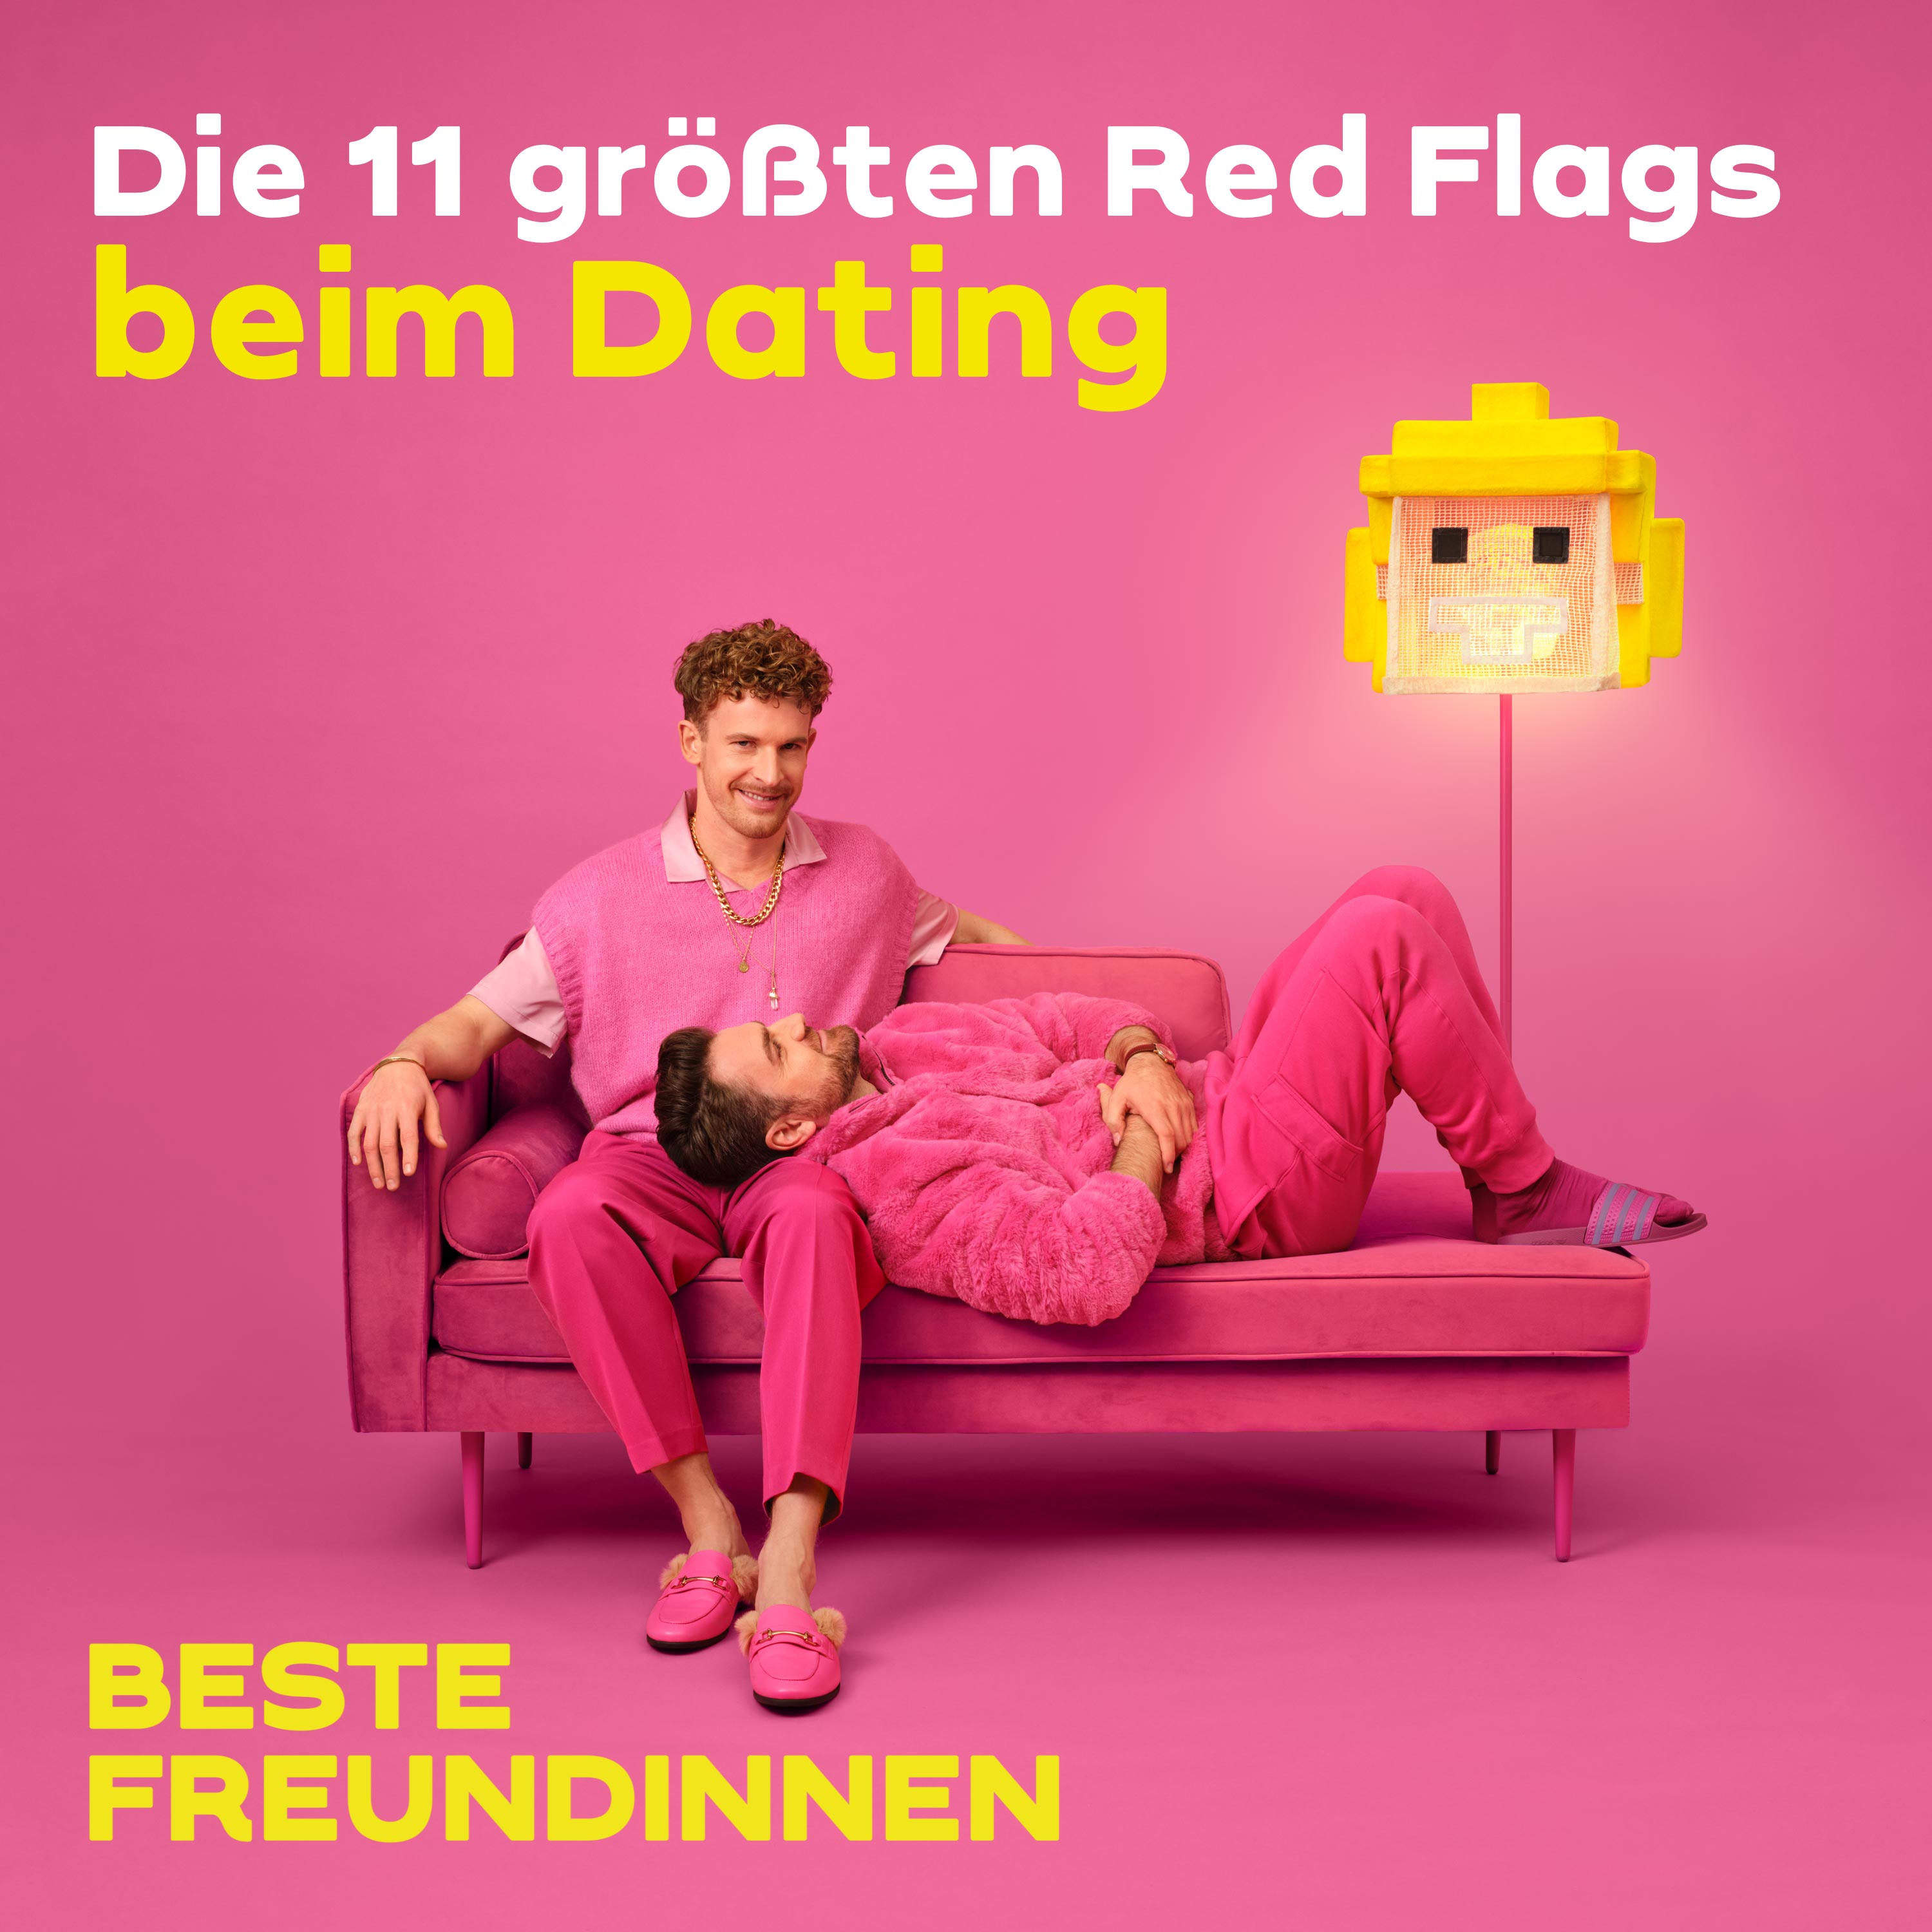 Die 11 größten Red Flags beim Dating